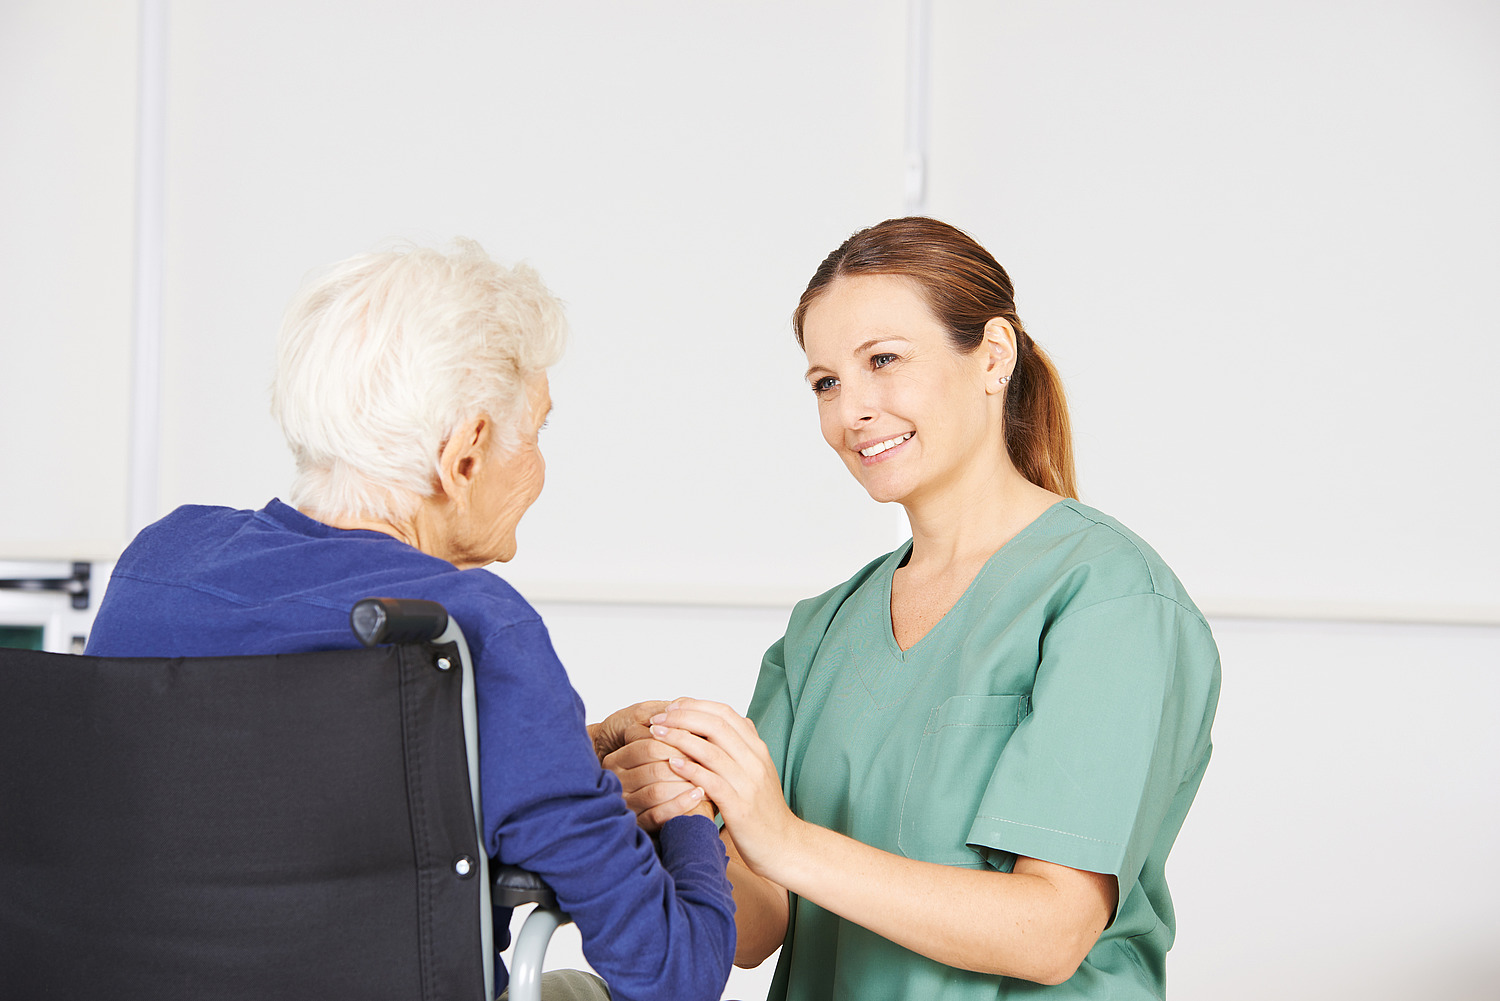 Care- und Case-Managerinnen (CCM) mit geriatrischer Expertise sollen Senioren dabei unterstützen, so lange wie möglich selbstbestimmt leben zu können. Nun hat eine Studie das Modellprojekt "Rubin" evaluiert.